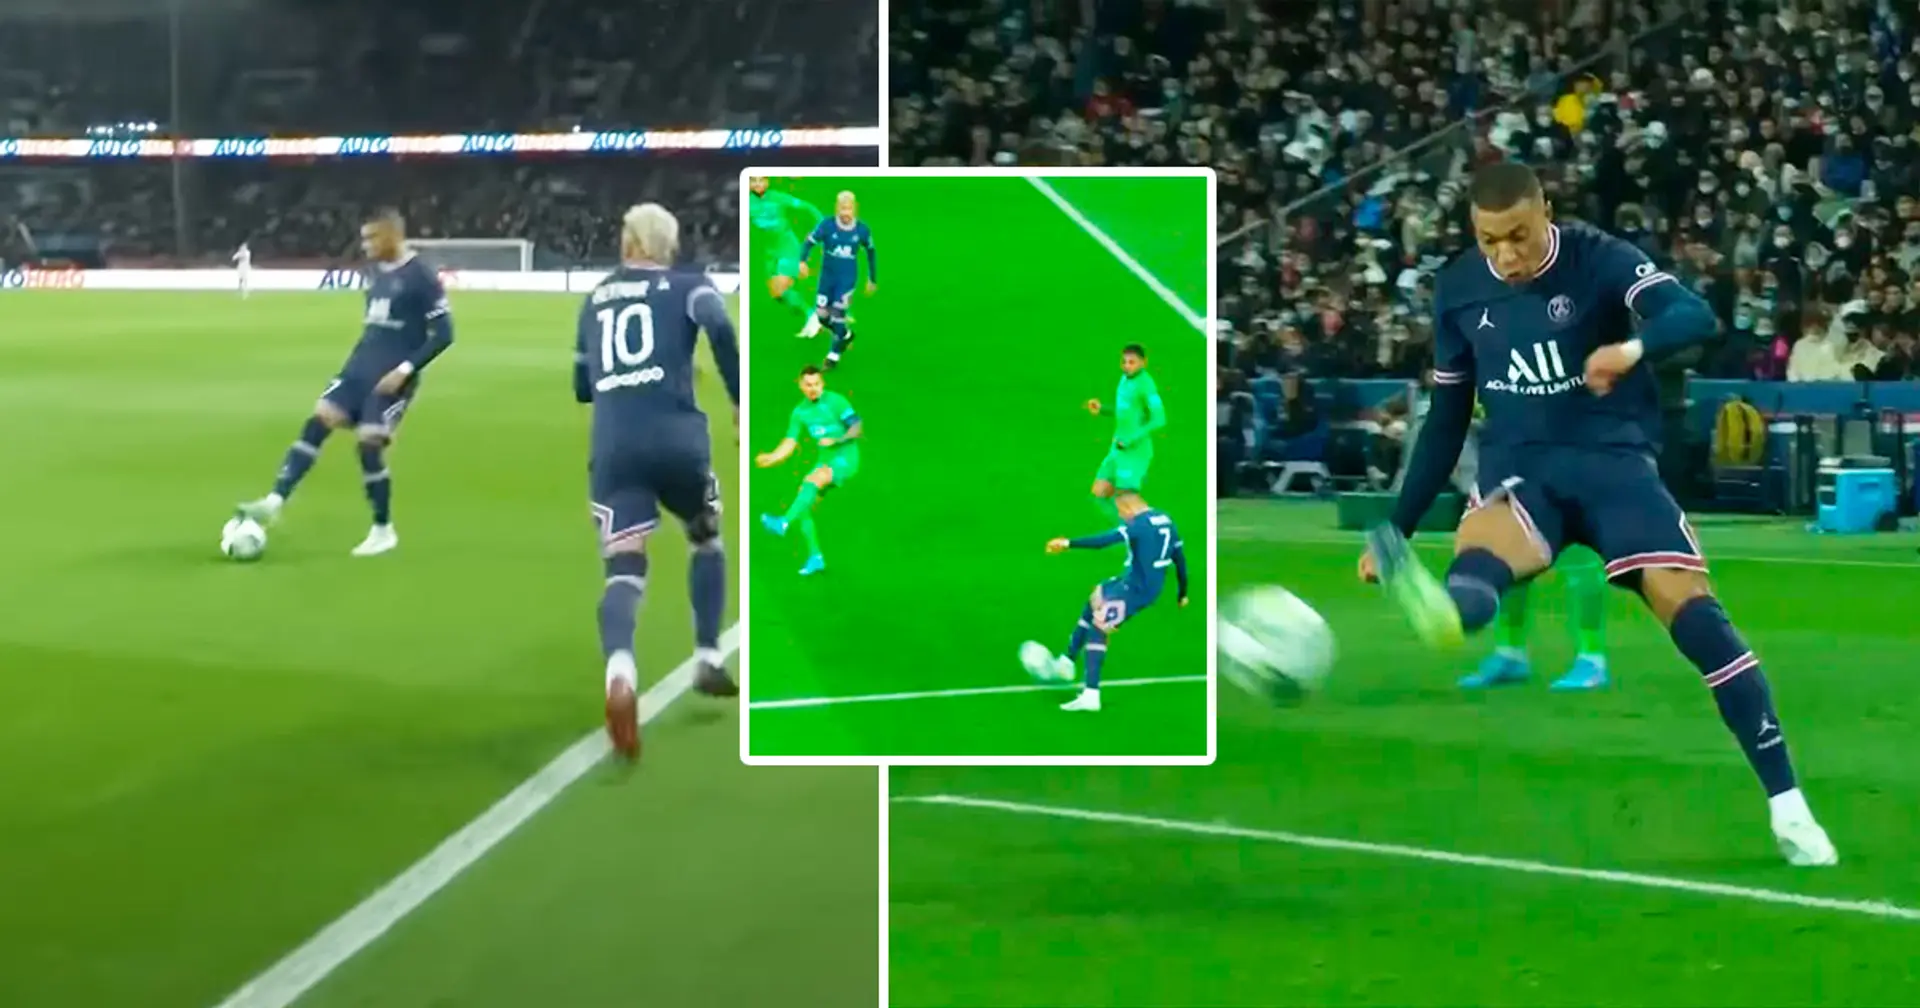 "C'est de la playstation": Kylian Mbappé laisse les fans sans voix avec une passe dé exceptionnelle vs Saint-Etienne